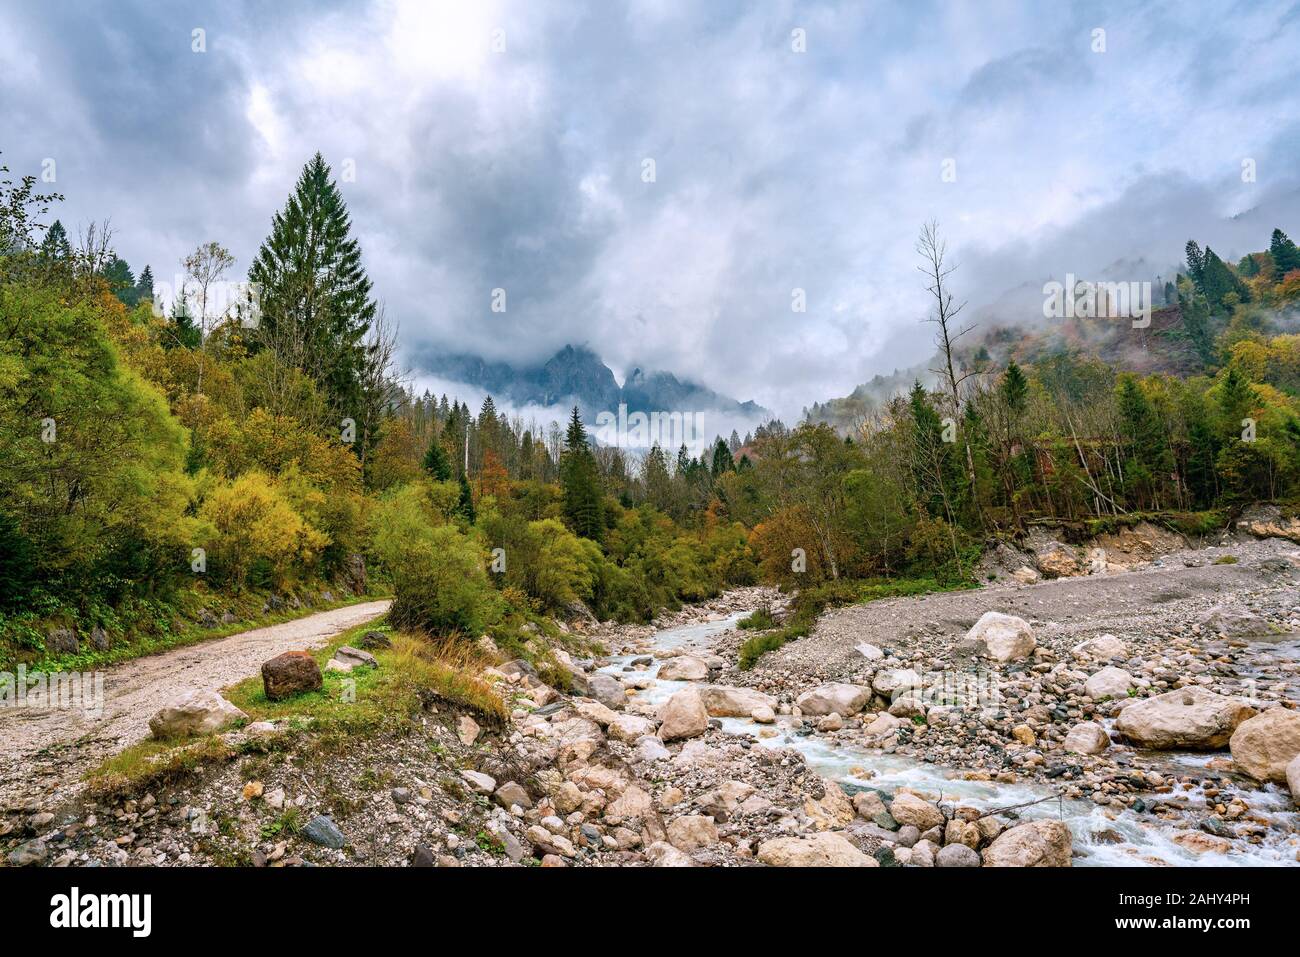 Vista panorámica del río Torrente Mis cerca de California (Gosaldo) en Italia con poca agua en otoño. Foto de stock